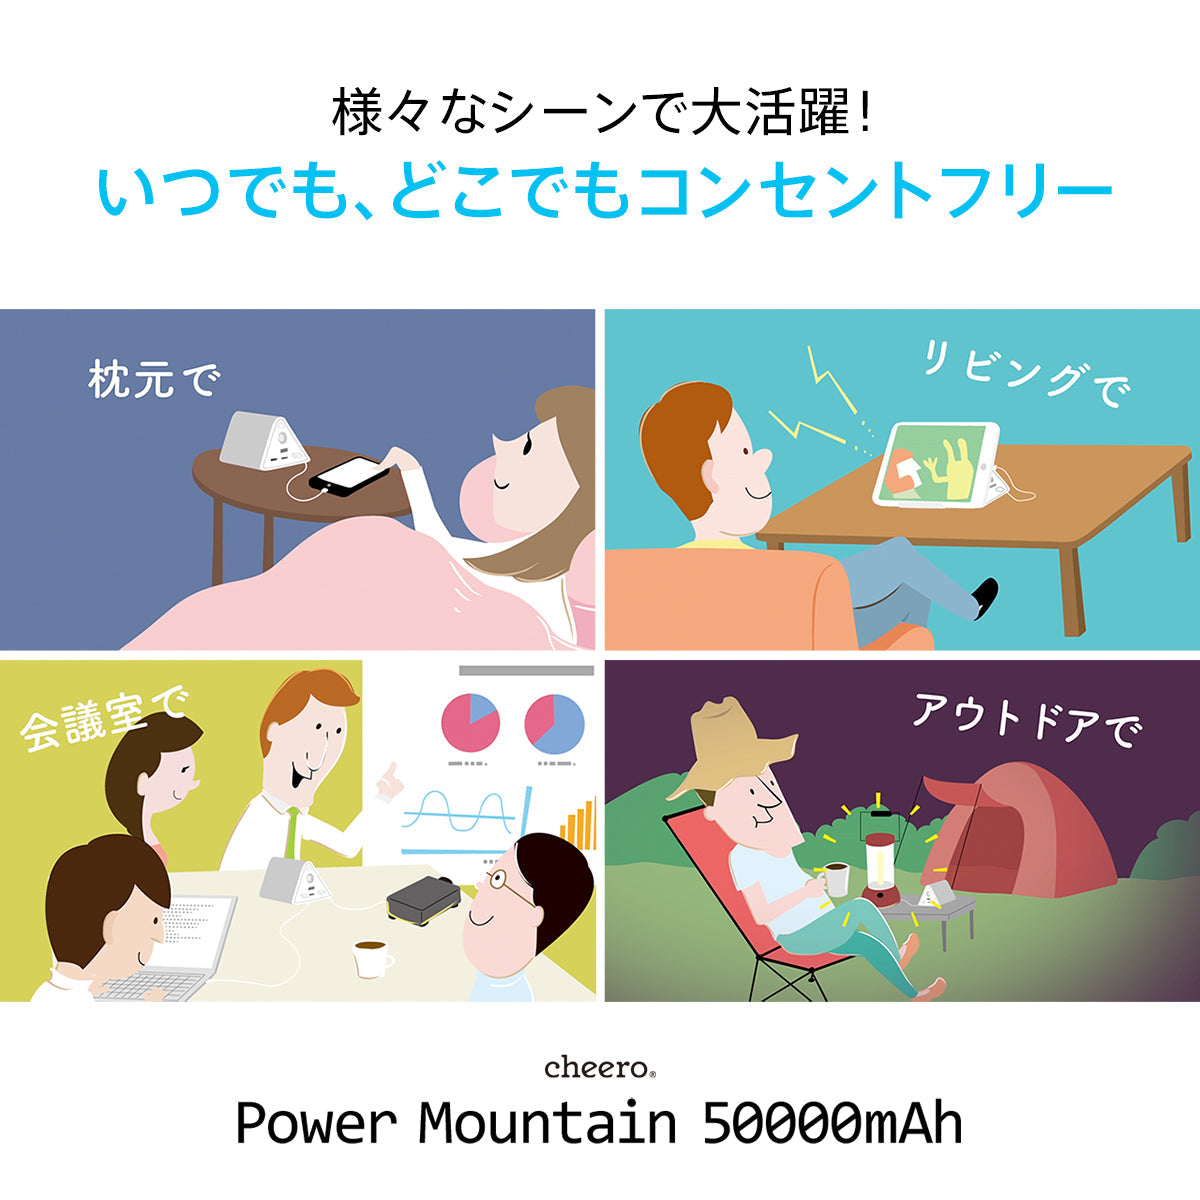 【販売終了】cheero Power Mountain 50000mAh